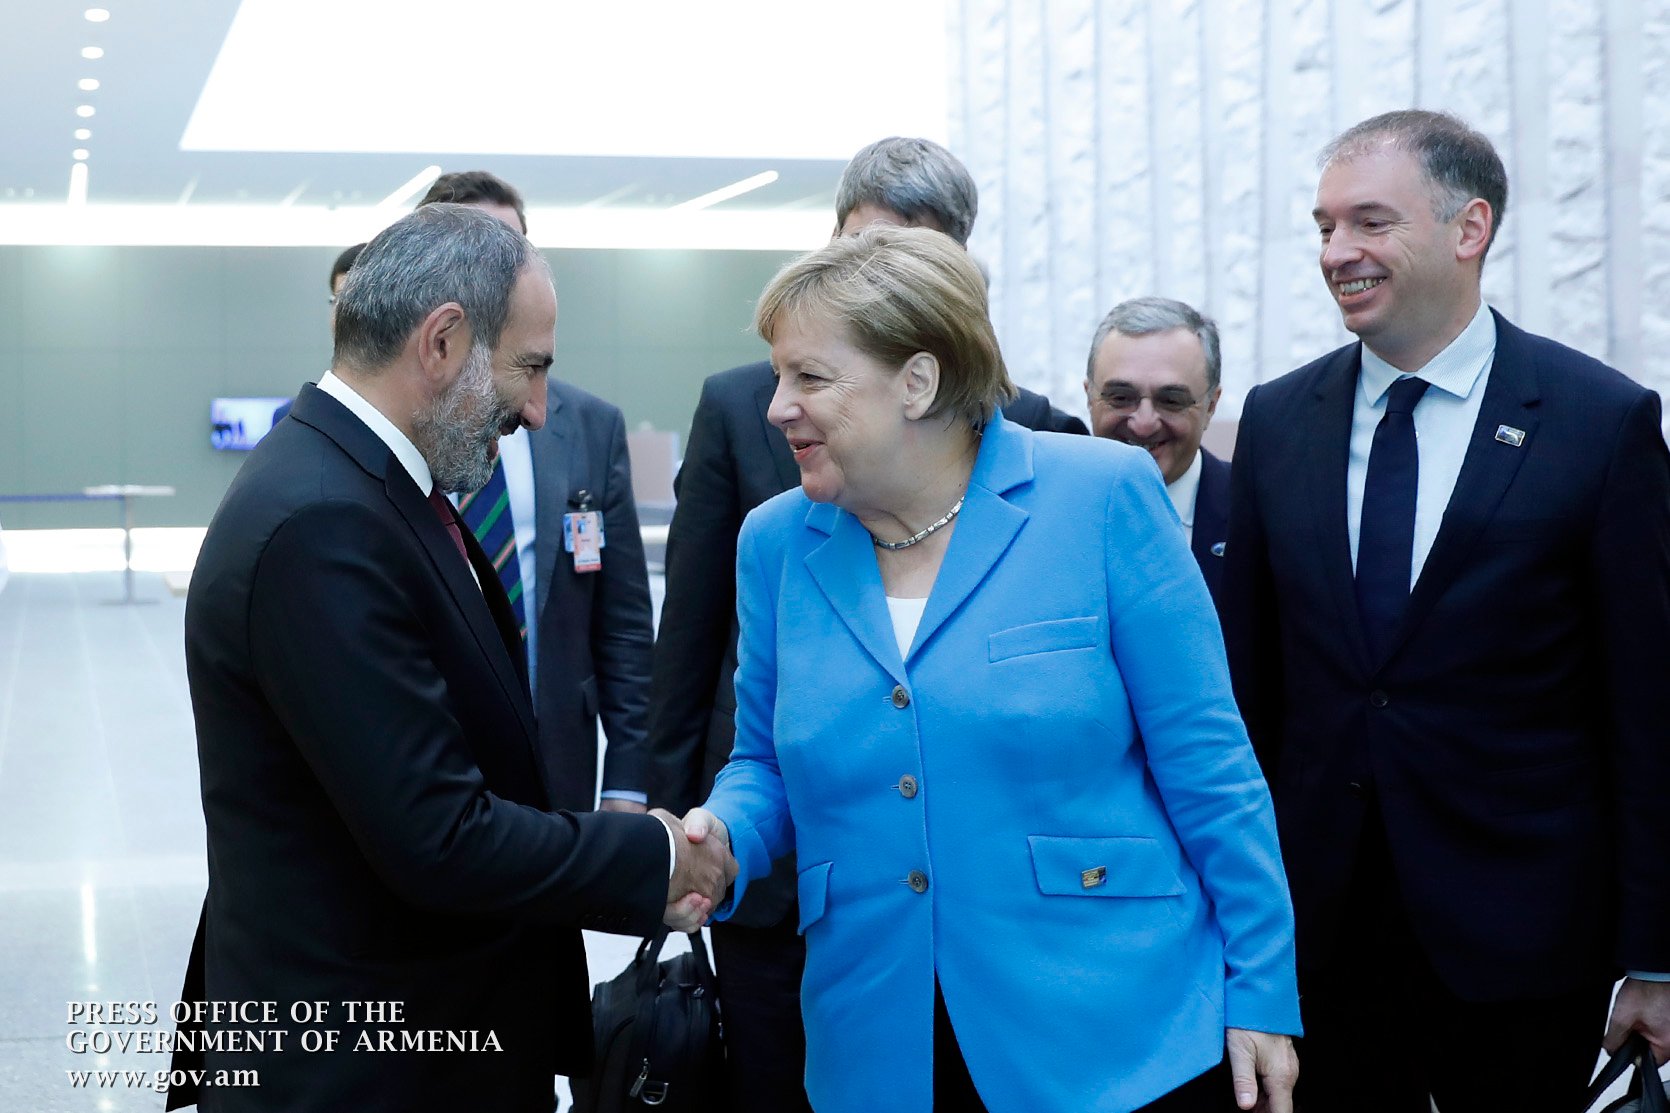 German Chancellor Angela Merkel to visit Armenia